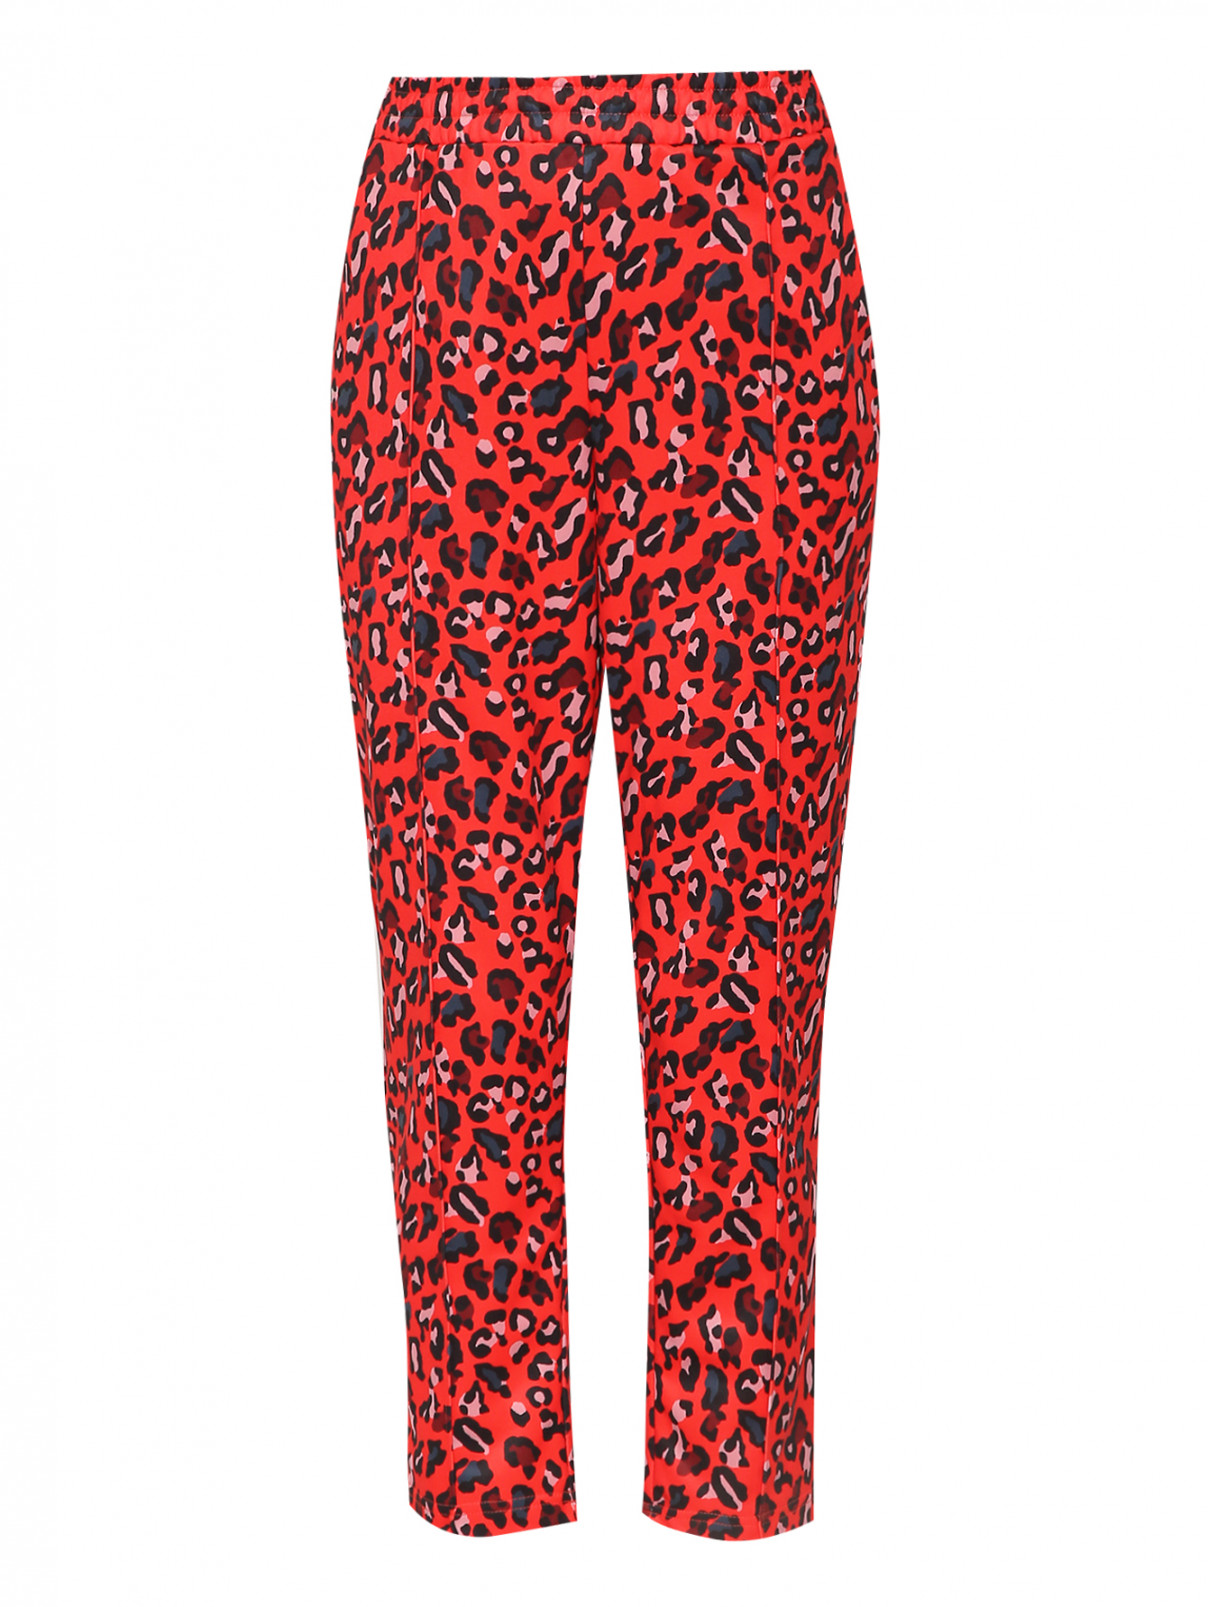 Брюки на резинке с узором Juicy Couture  –  Общий вид  – Цвет:  Красный